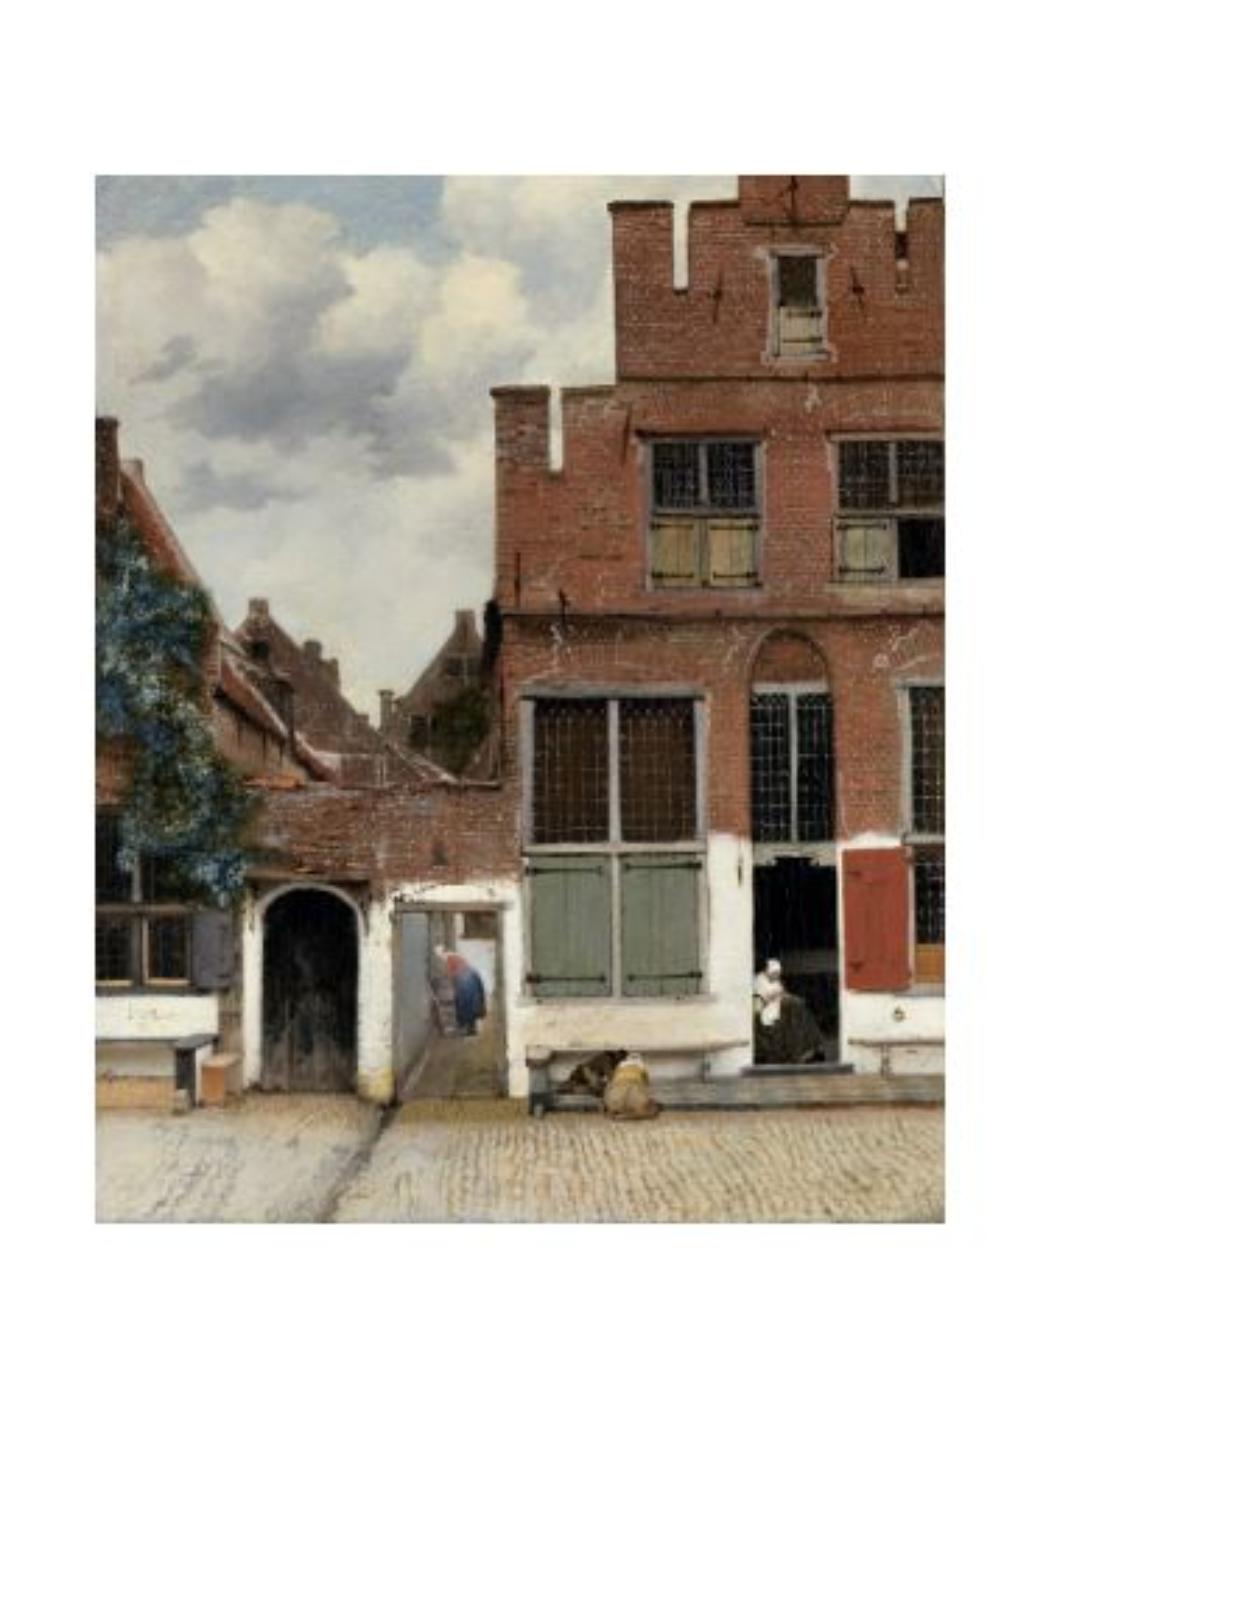 Album de arta Jan Vermeer